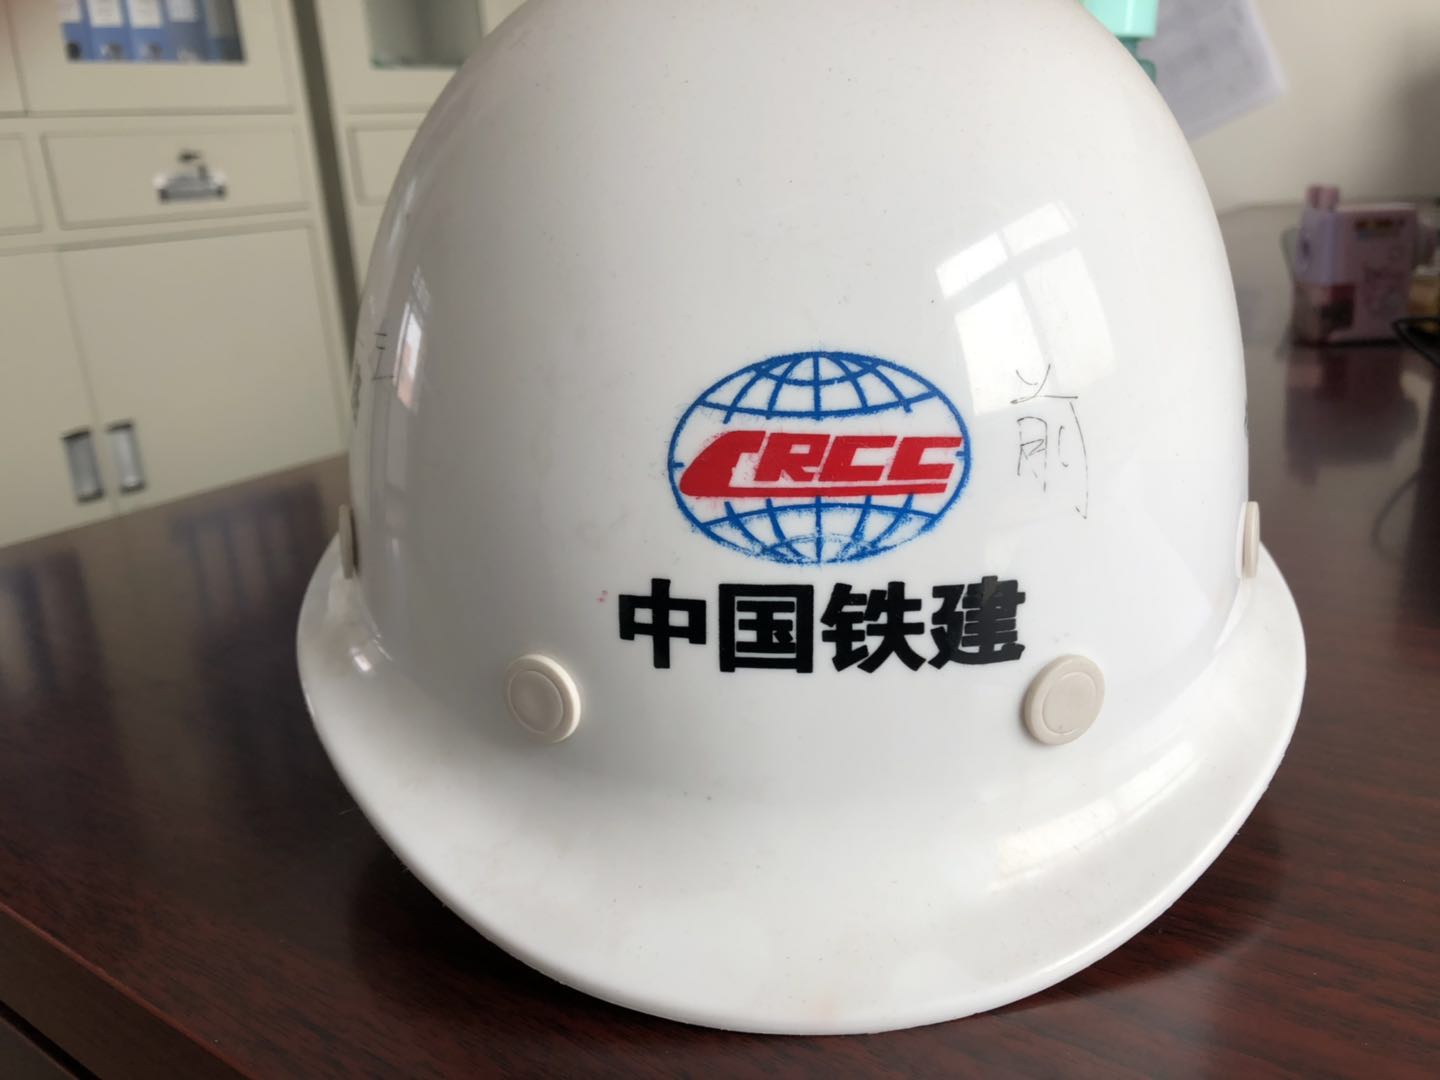 中铁十六局集团第四工程有限公司郑许市域铁路三项目部安全帽询价公告